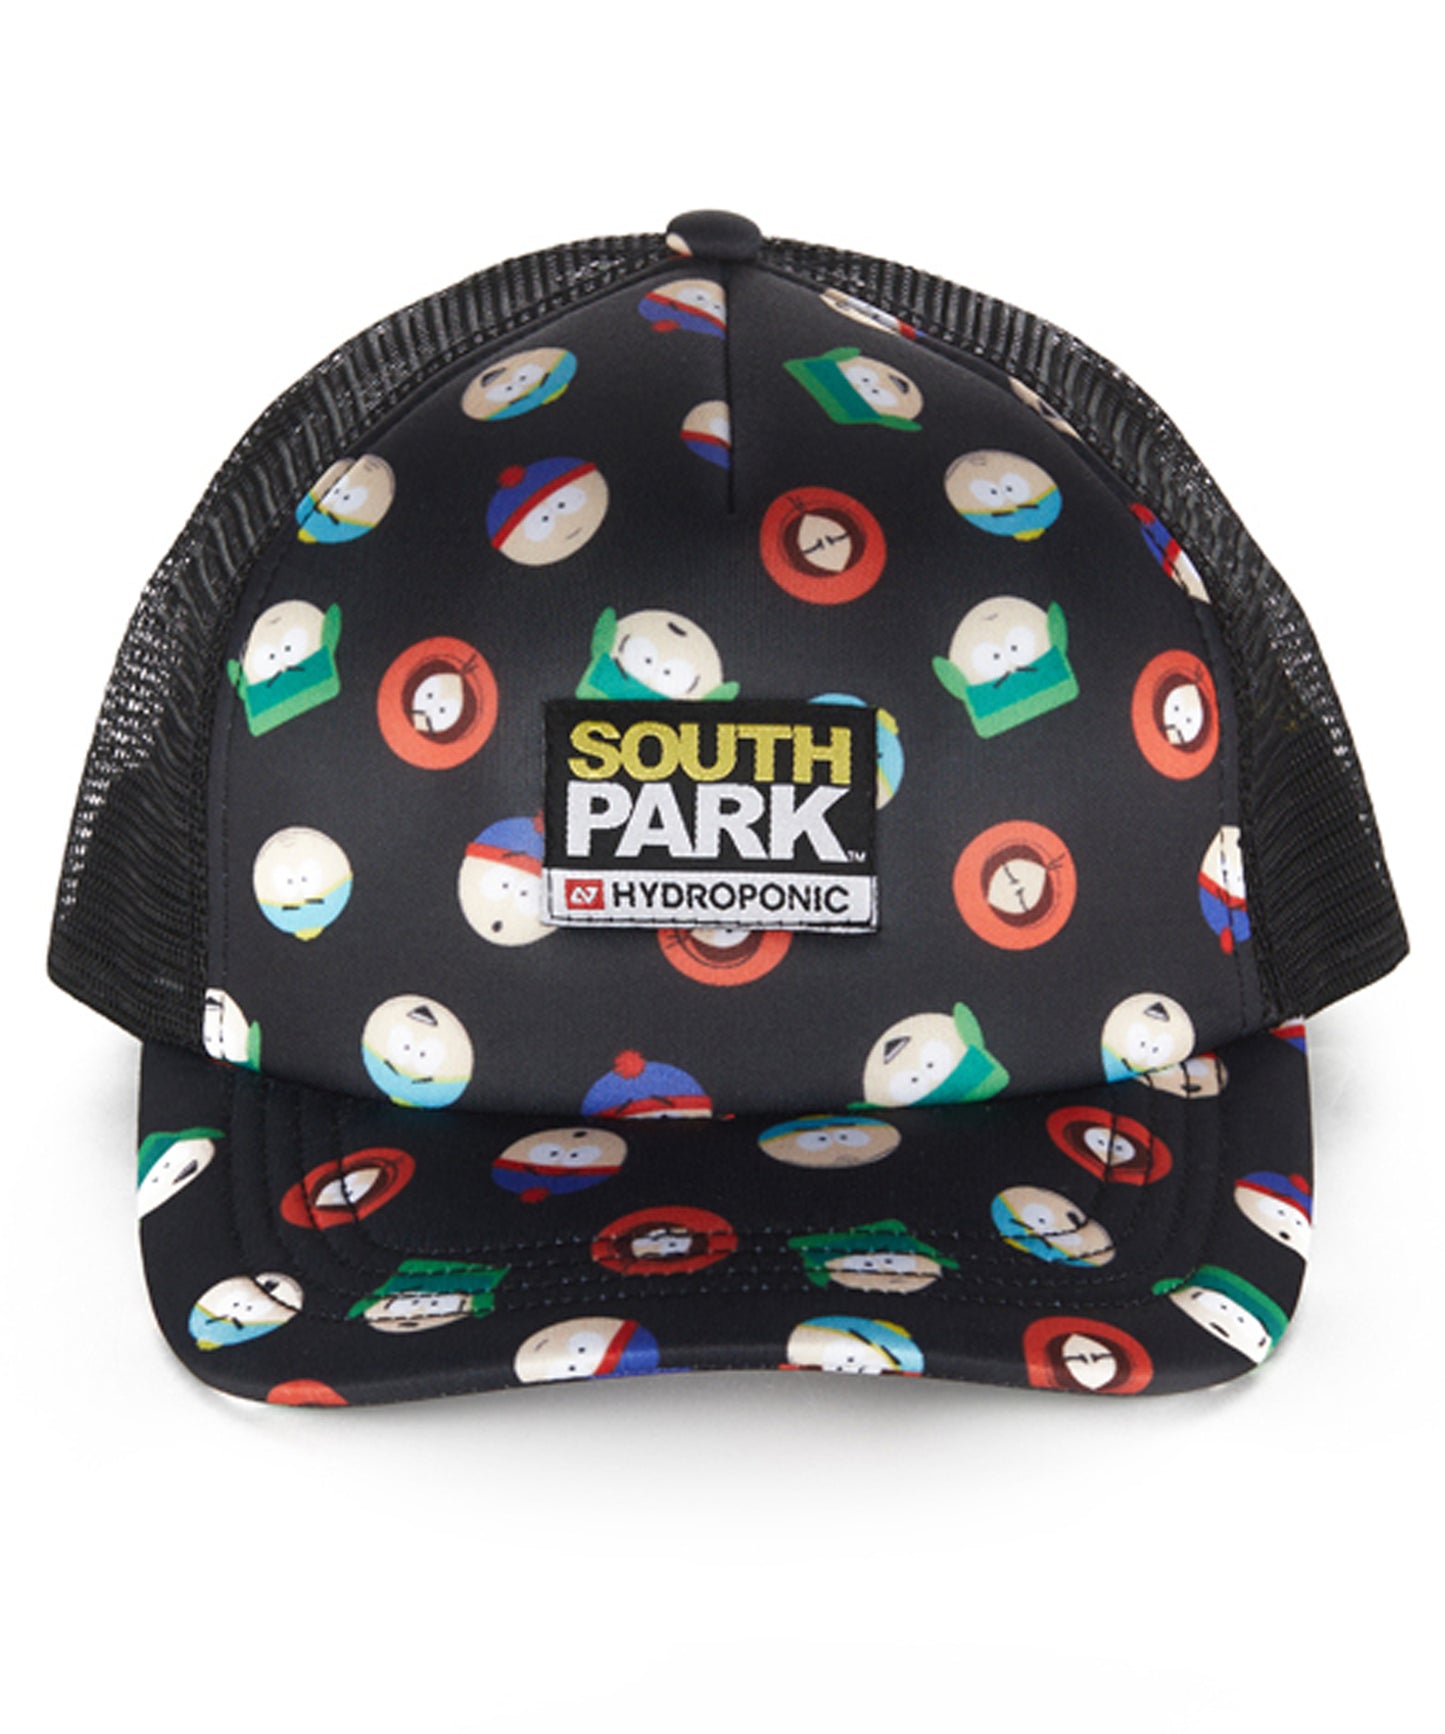 hydroponic-gorra-heads-black-Gorra de pana de 5 paneles-colaboración oficial de South Park X Hydroponic-color verde-logo south park